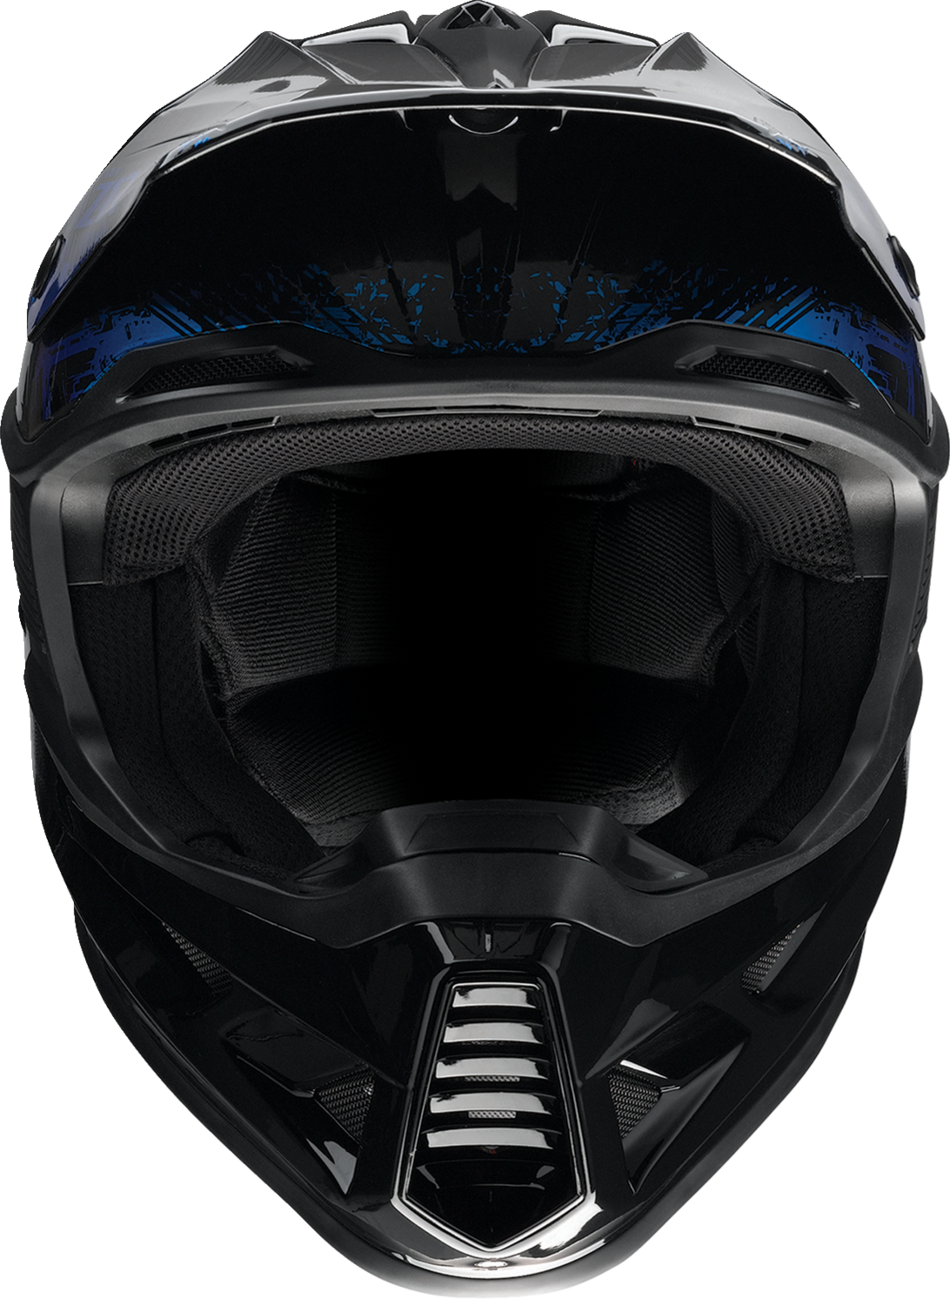 Z1R F.I. Helmet - Fractal - MIPS - Blue - Large 0110-7790